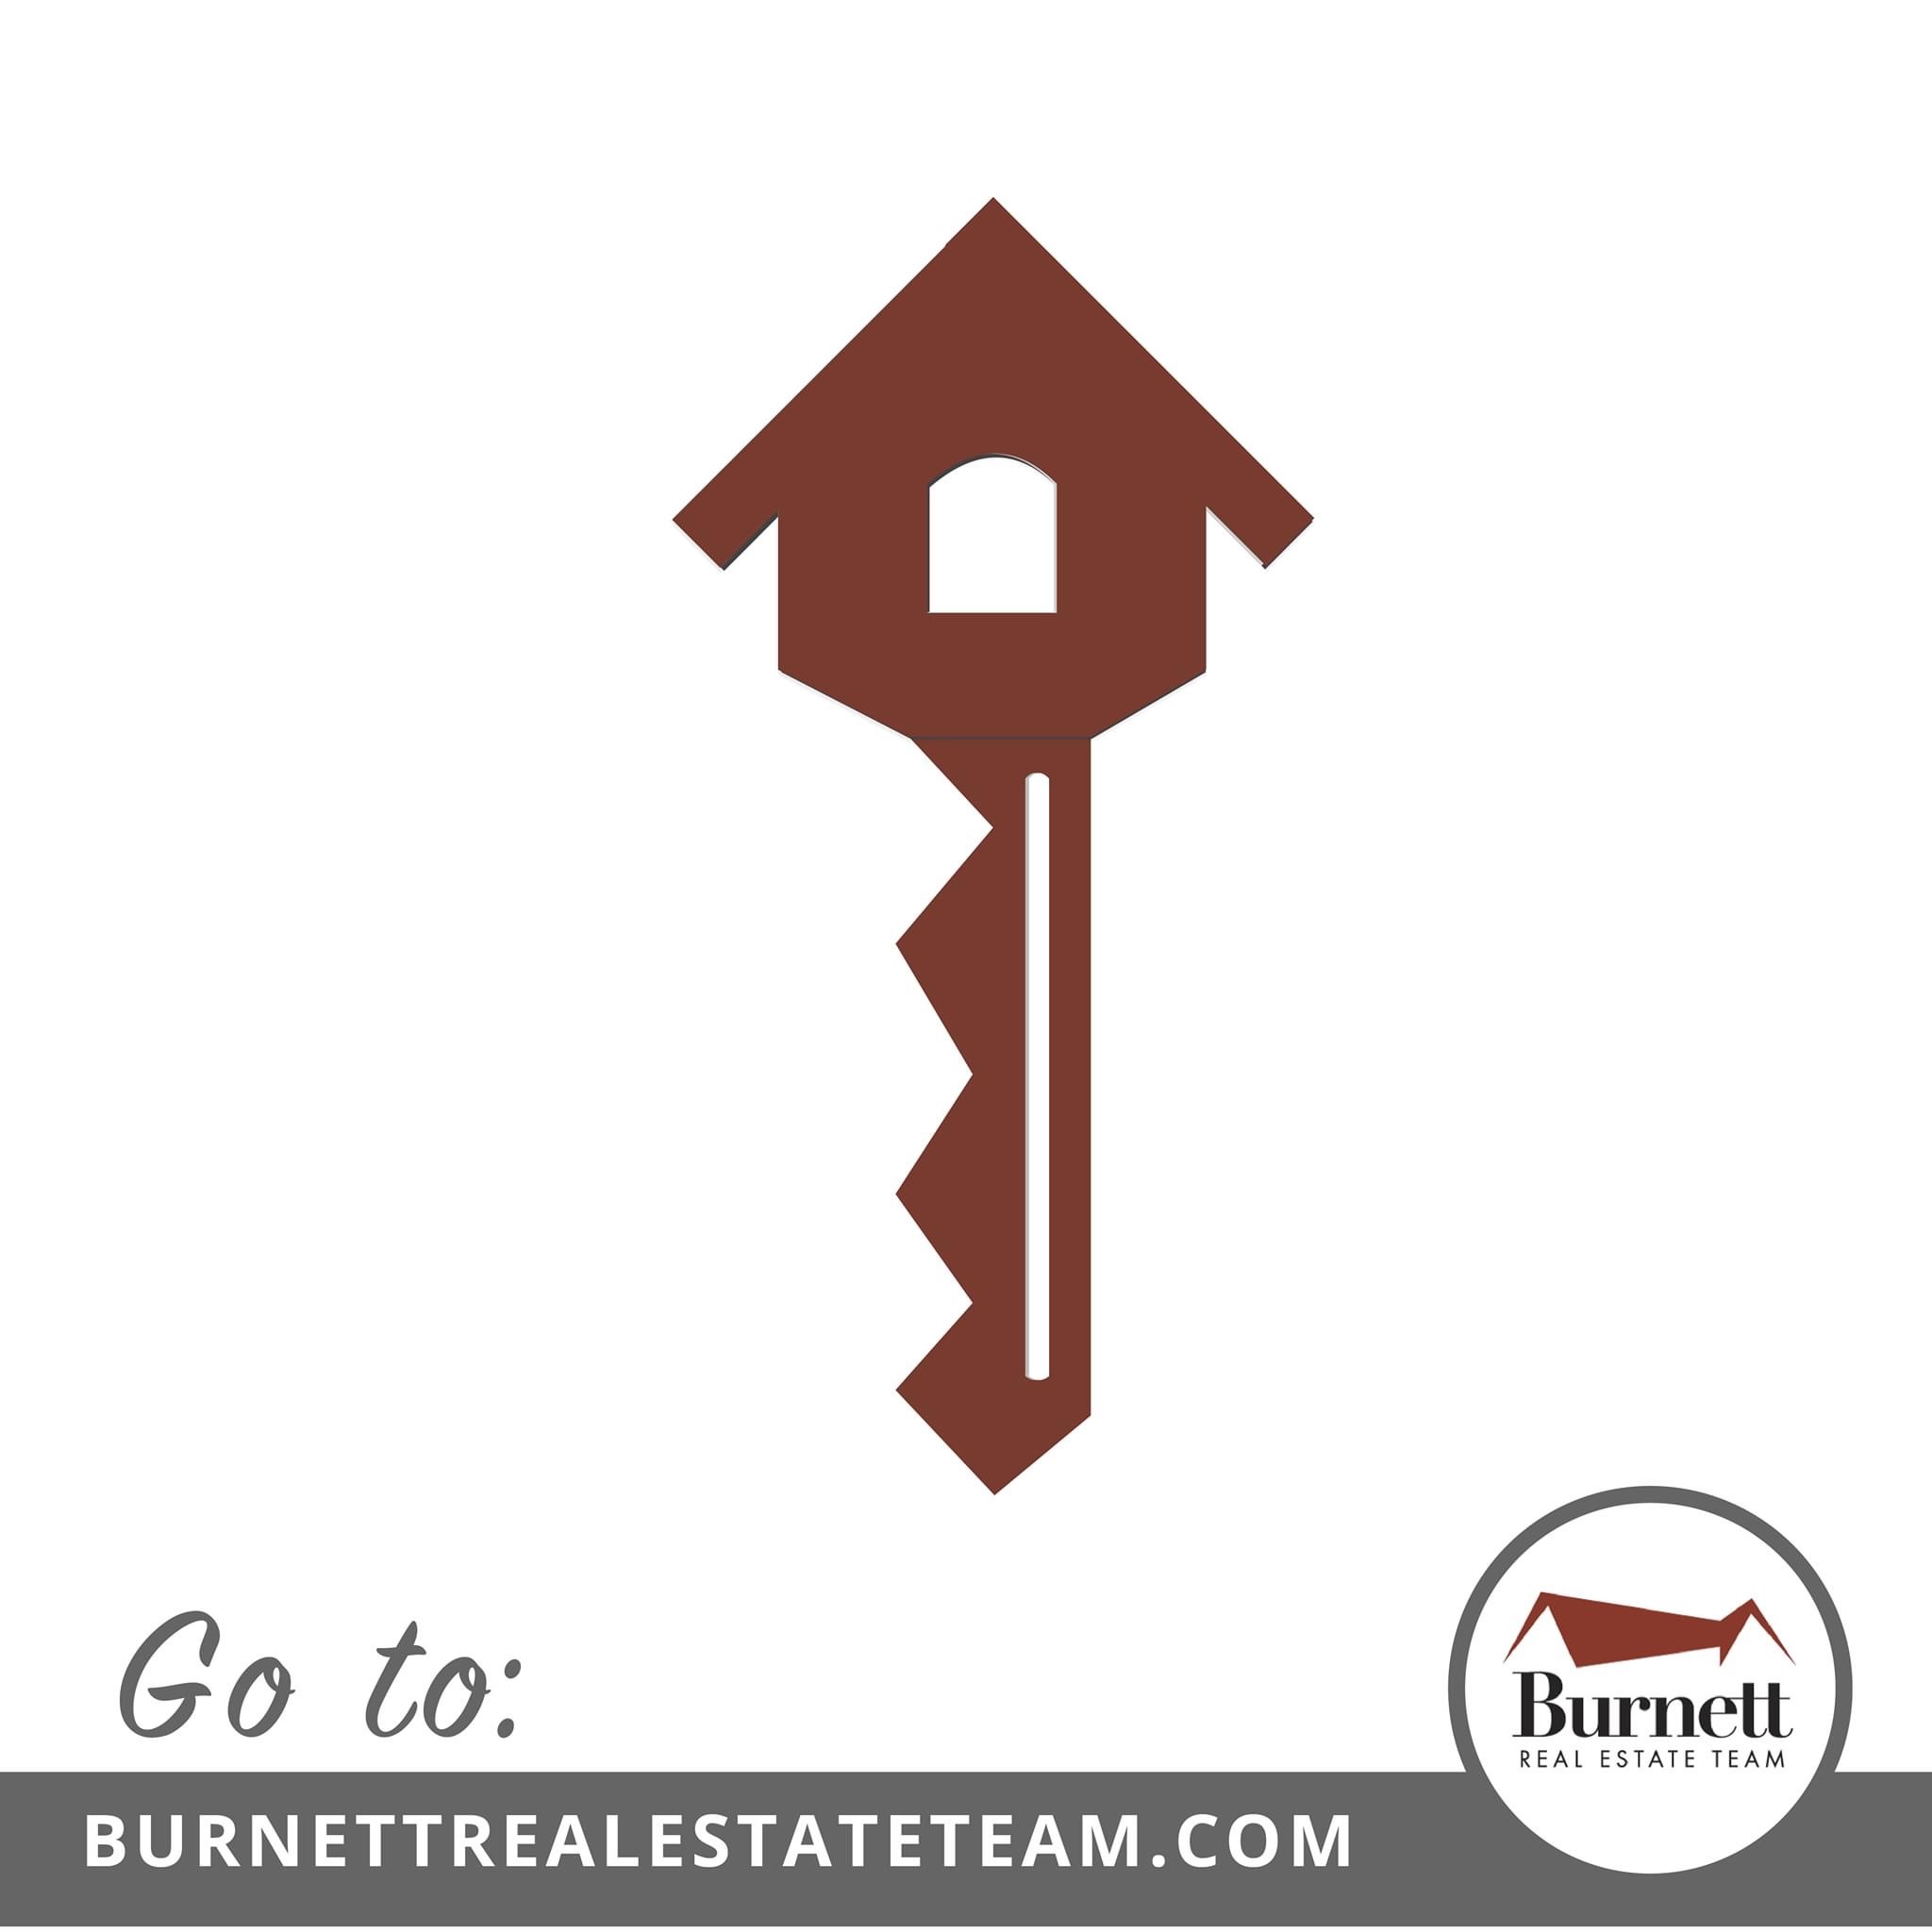 Burnett Real Estate Team